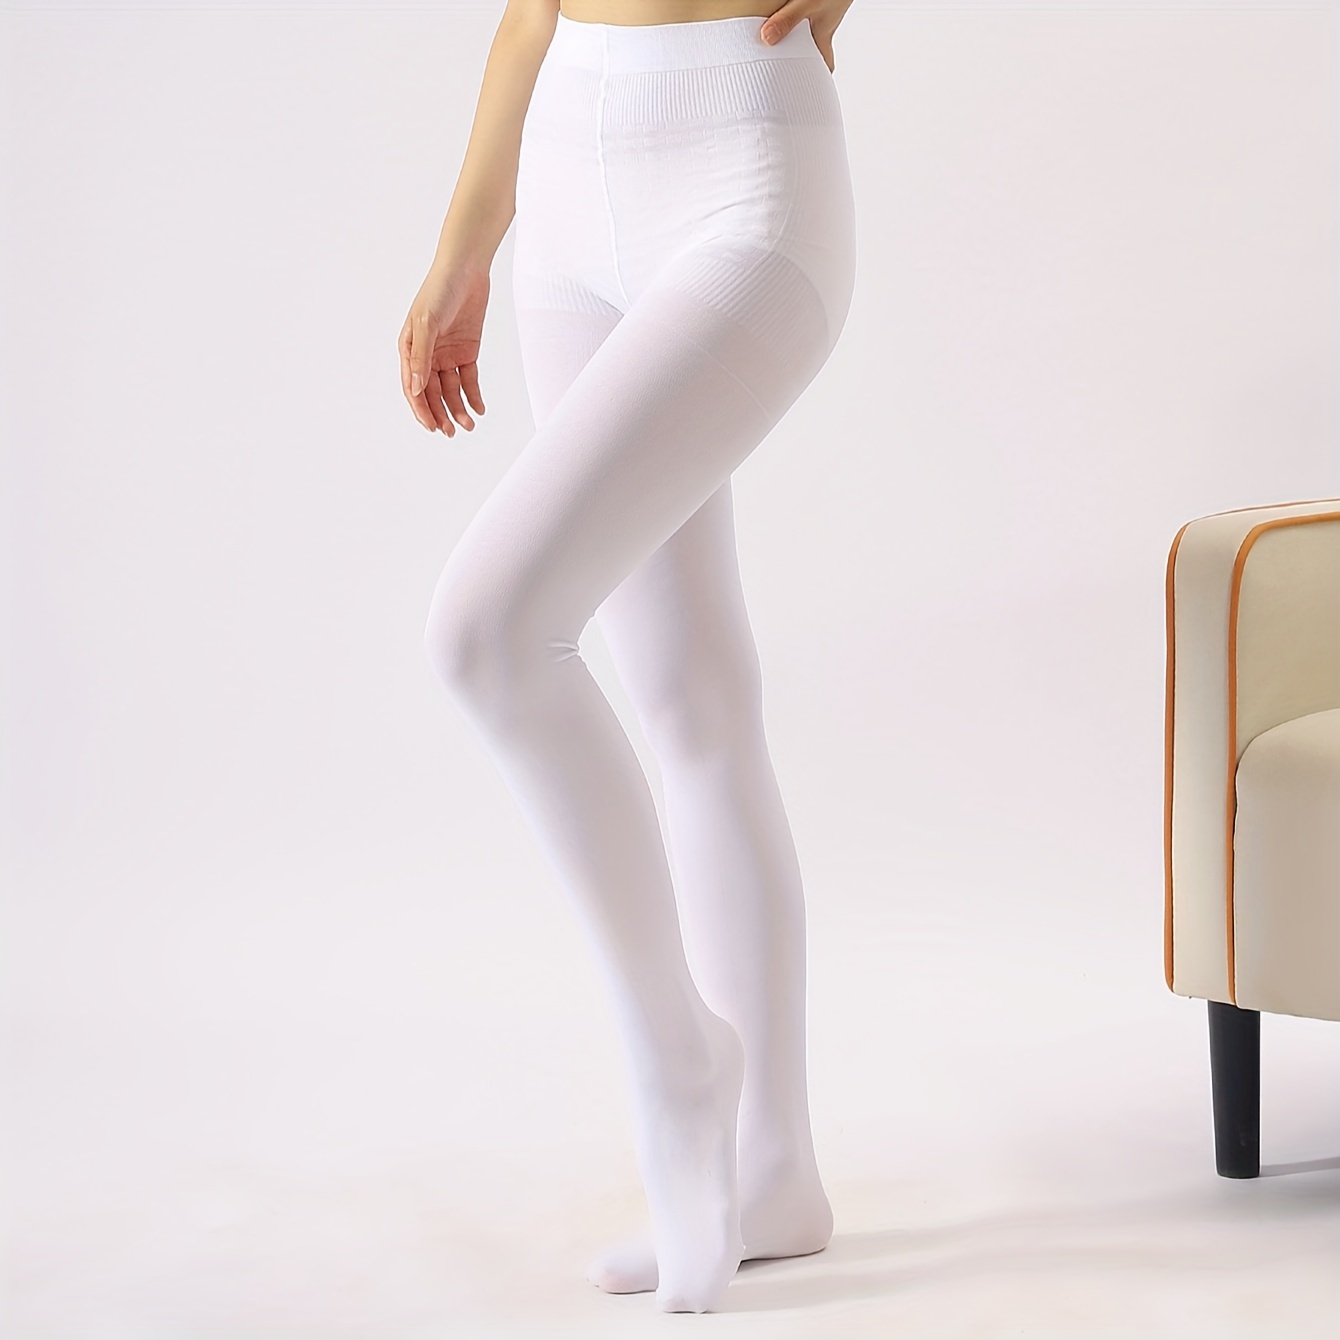 Opaque Elastic Tights, High Waist Thermal Slim Leggings, Women's Stockings  & Hosiery